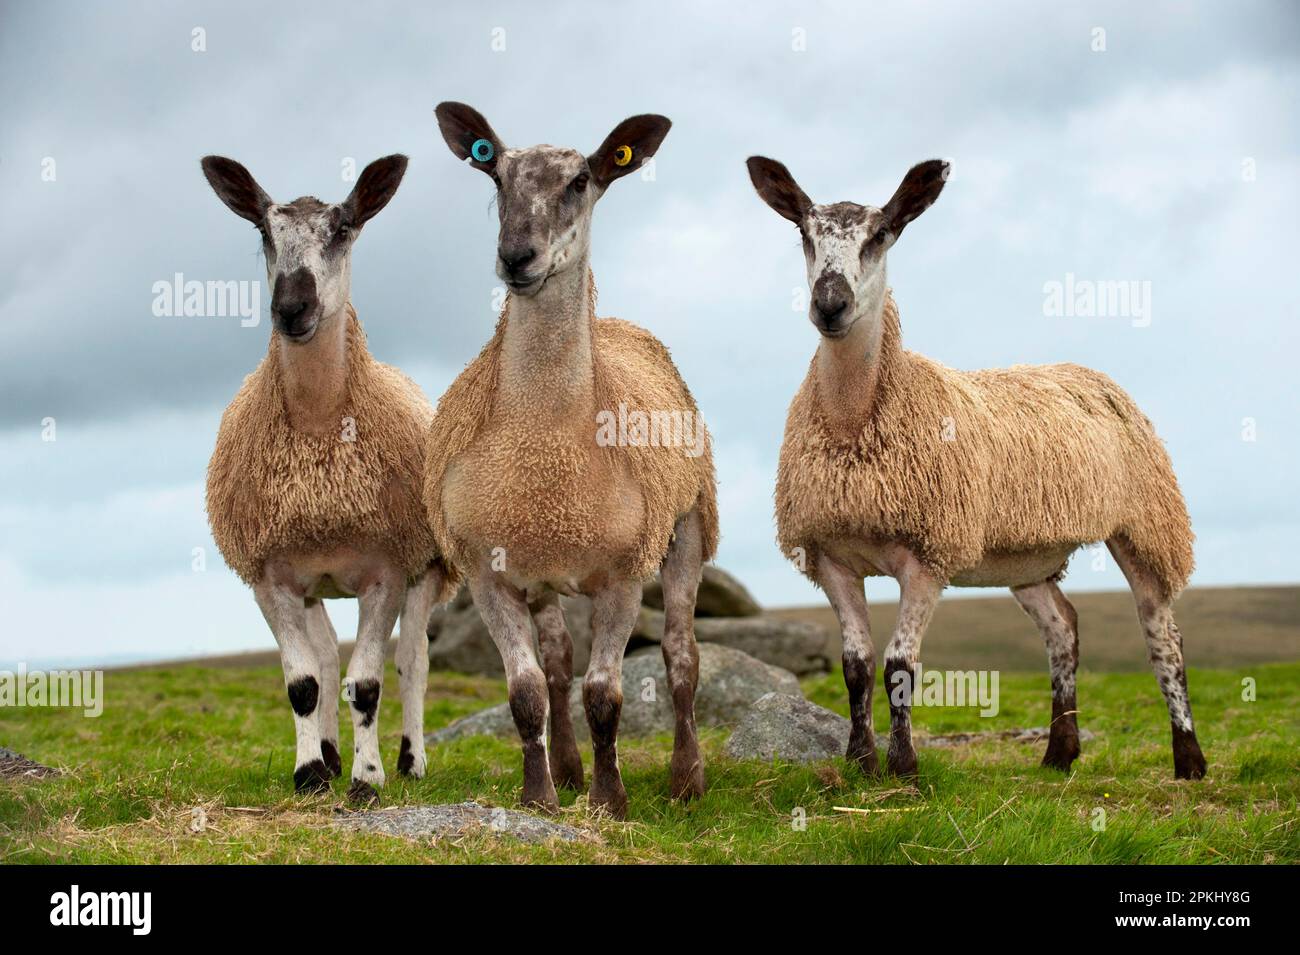 Mouton domestique, Leicester à face bleue, trois agneaux, debout dans un pâturage au bord de la lande, Dartmoor, Devon, Angleterre, Royaume-Uni Banque D'Images